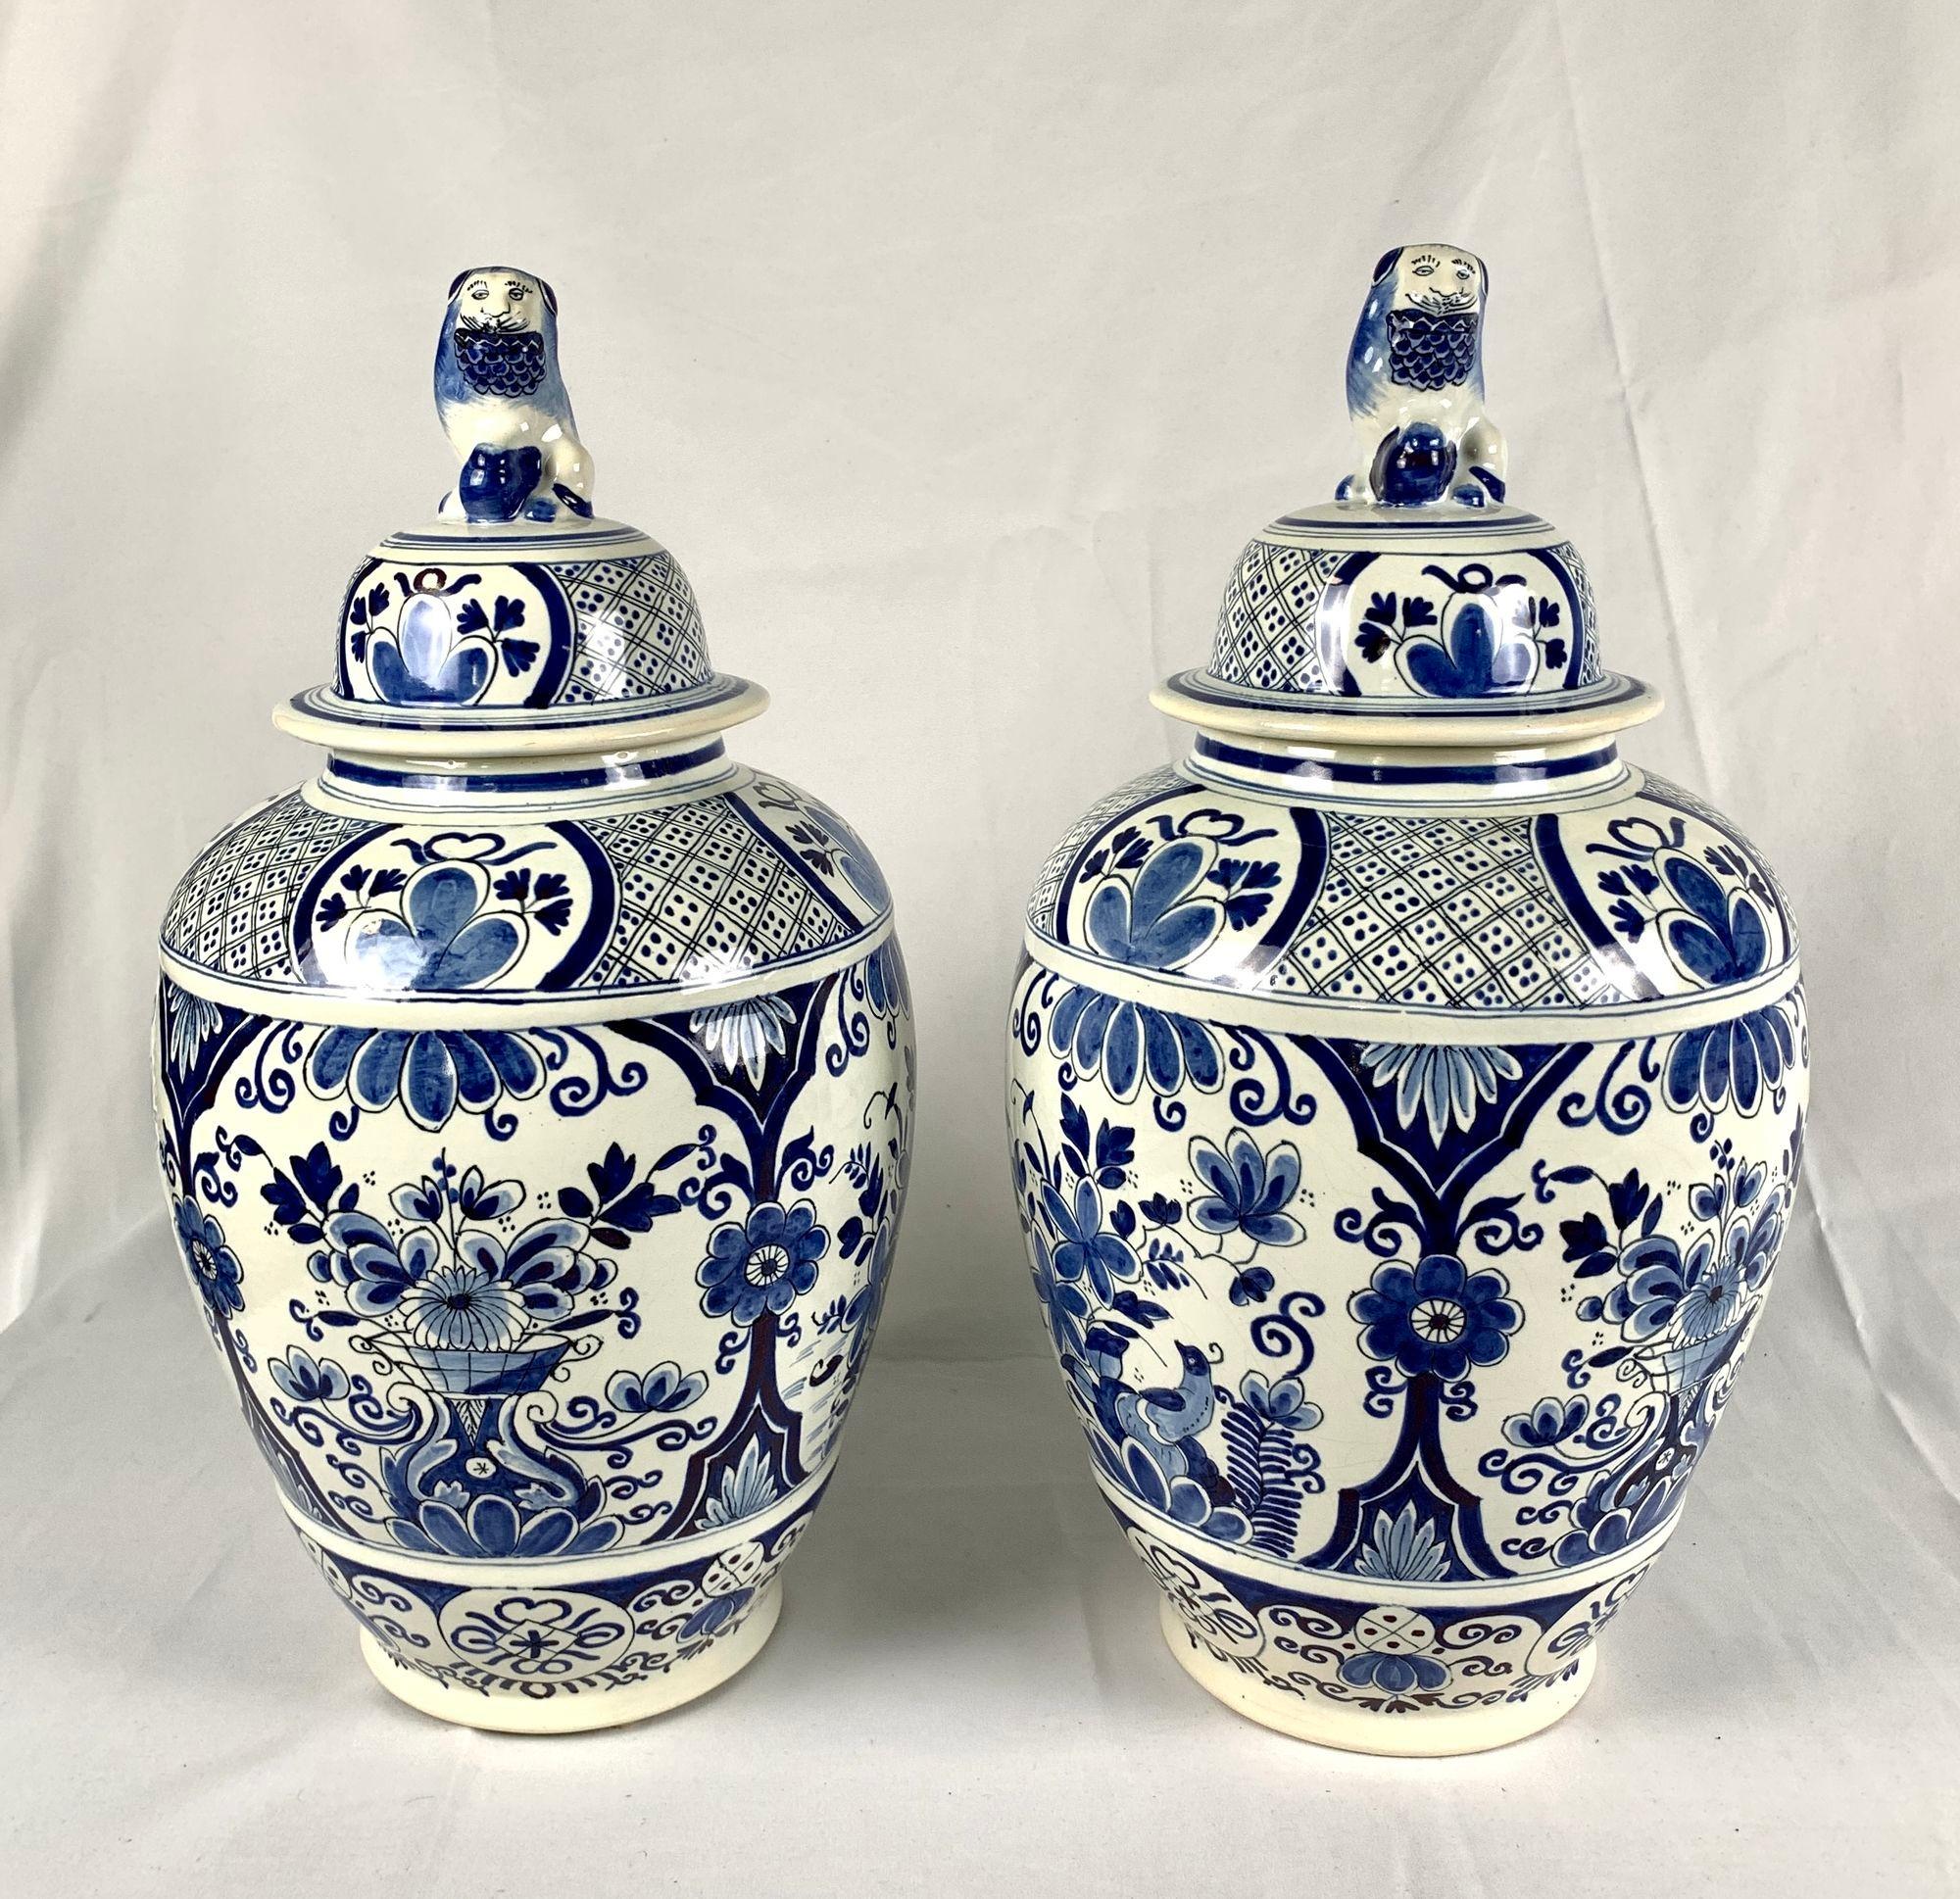 Cette paire de grandes jarres de Delft présente un décor floral traditionnel bleu et blanc peint sur un fond blanc vernissé à l'étain.
Le corps de chaque jarre est orné de quatre grands panneaux ; deux d'entre eux représentent un paon parmi des